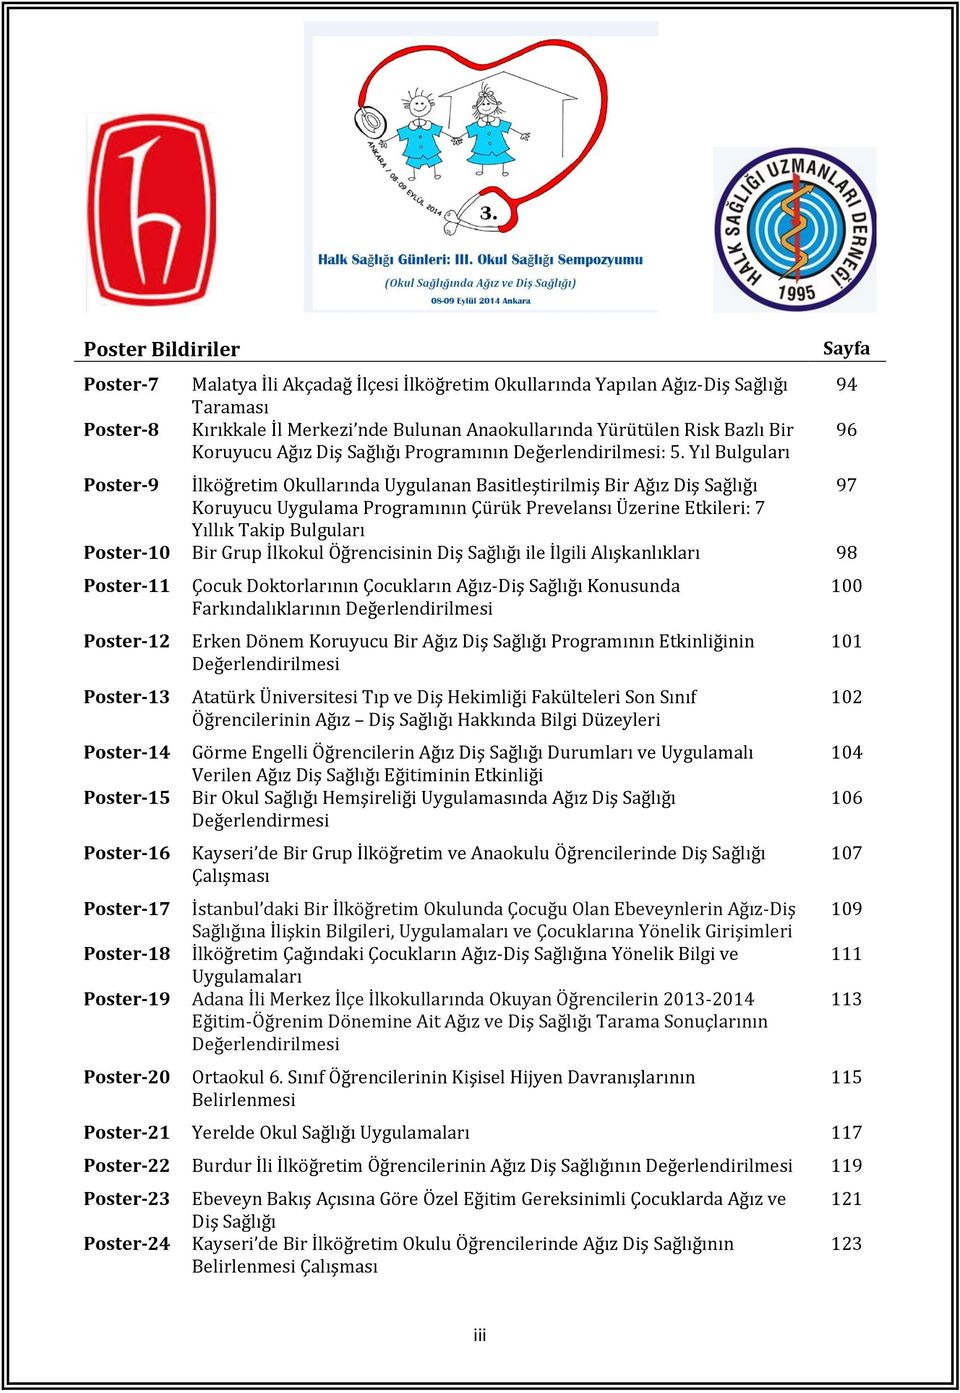 Yıl Bulguları Poster-9 İlköğretim Okullarında Uygulanan Basitleştirilmiş Bir Ağız Diş Sağlığı 97 Koruyucu Uygulama Programının Çürük Prevelansı Üzerine Etkileri: 7 Yıllık Takip Bulguları Poster-10